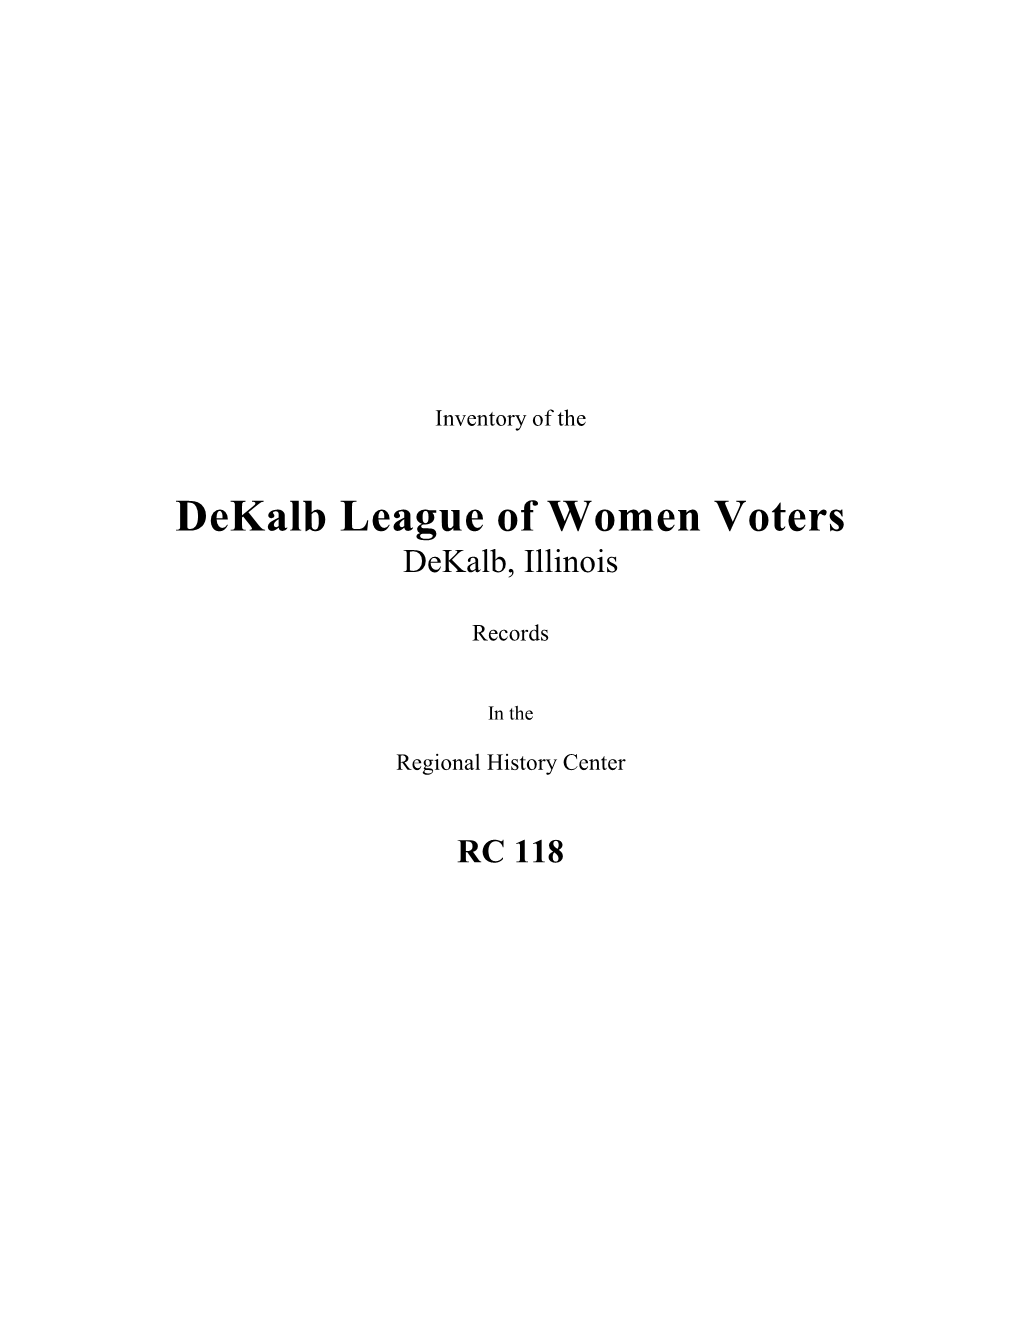 Dekalb League of Women Voters Records, 1924-1998 (RC 118)